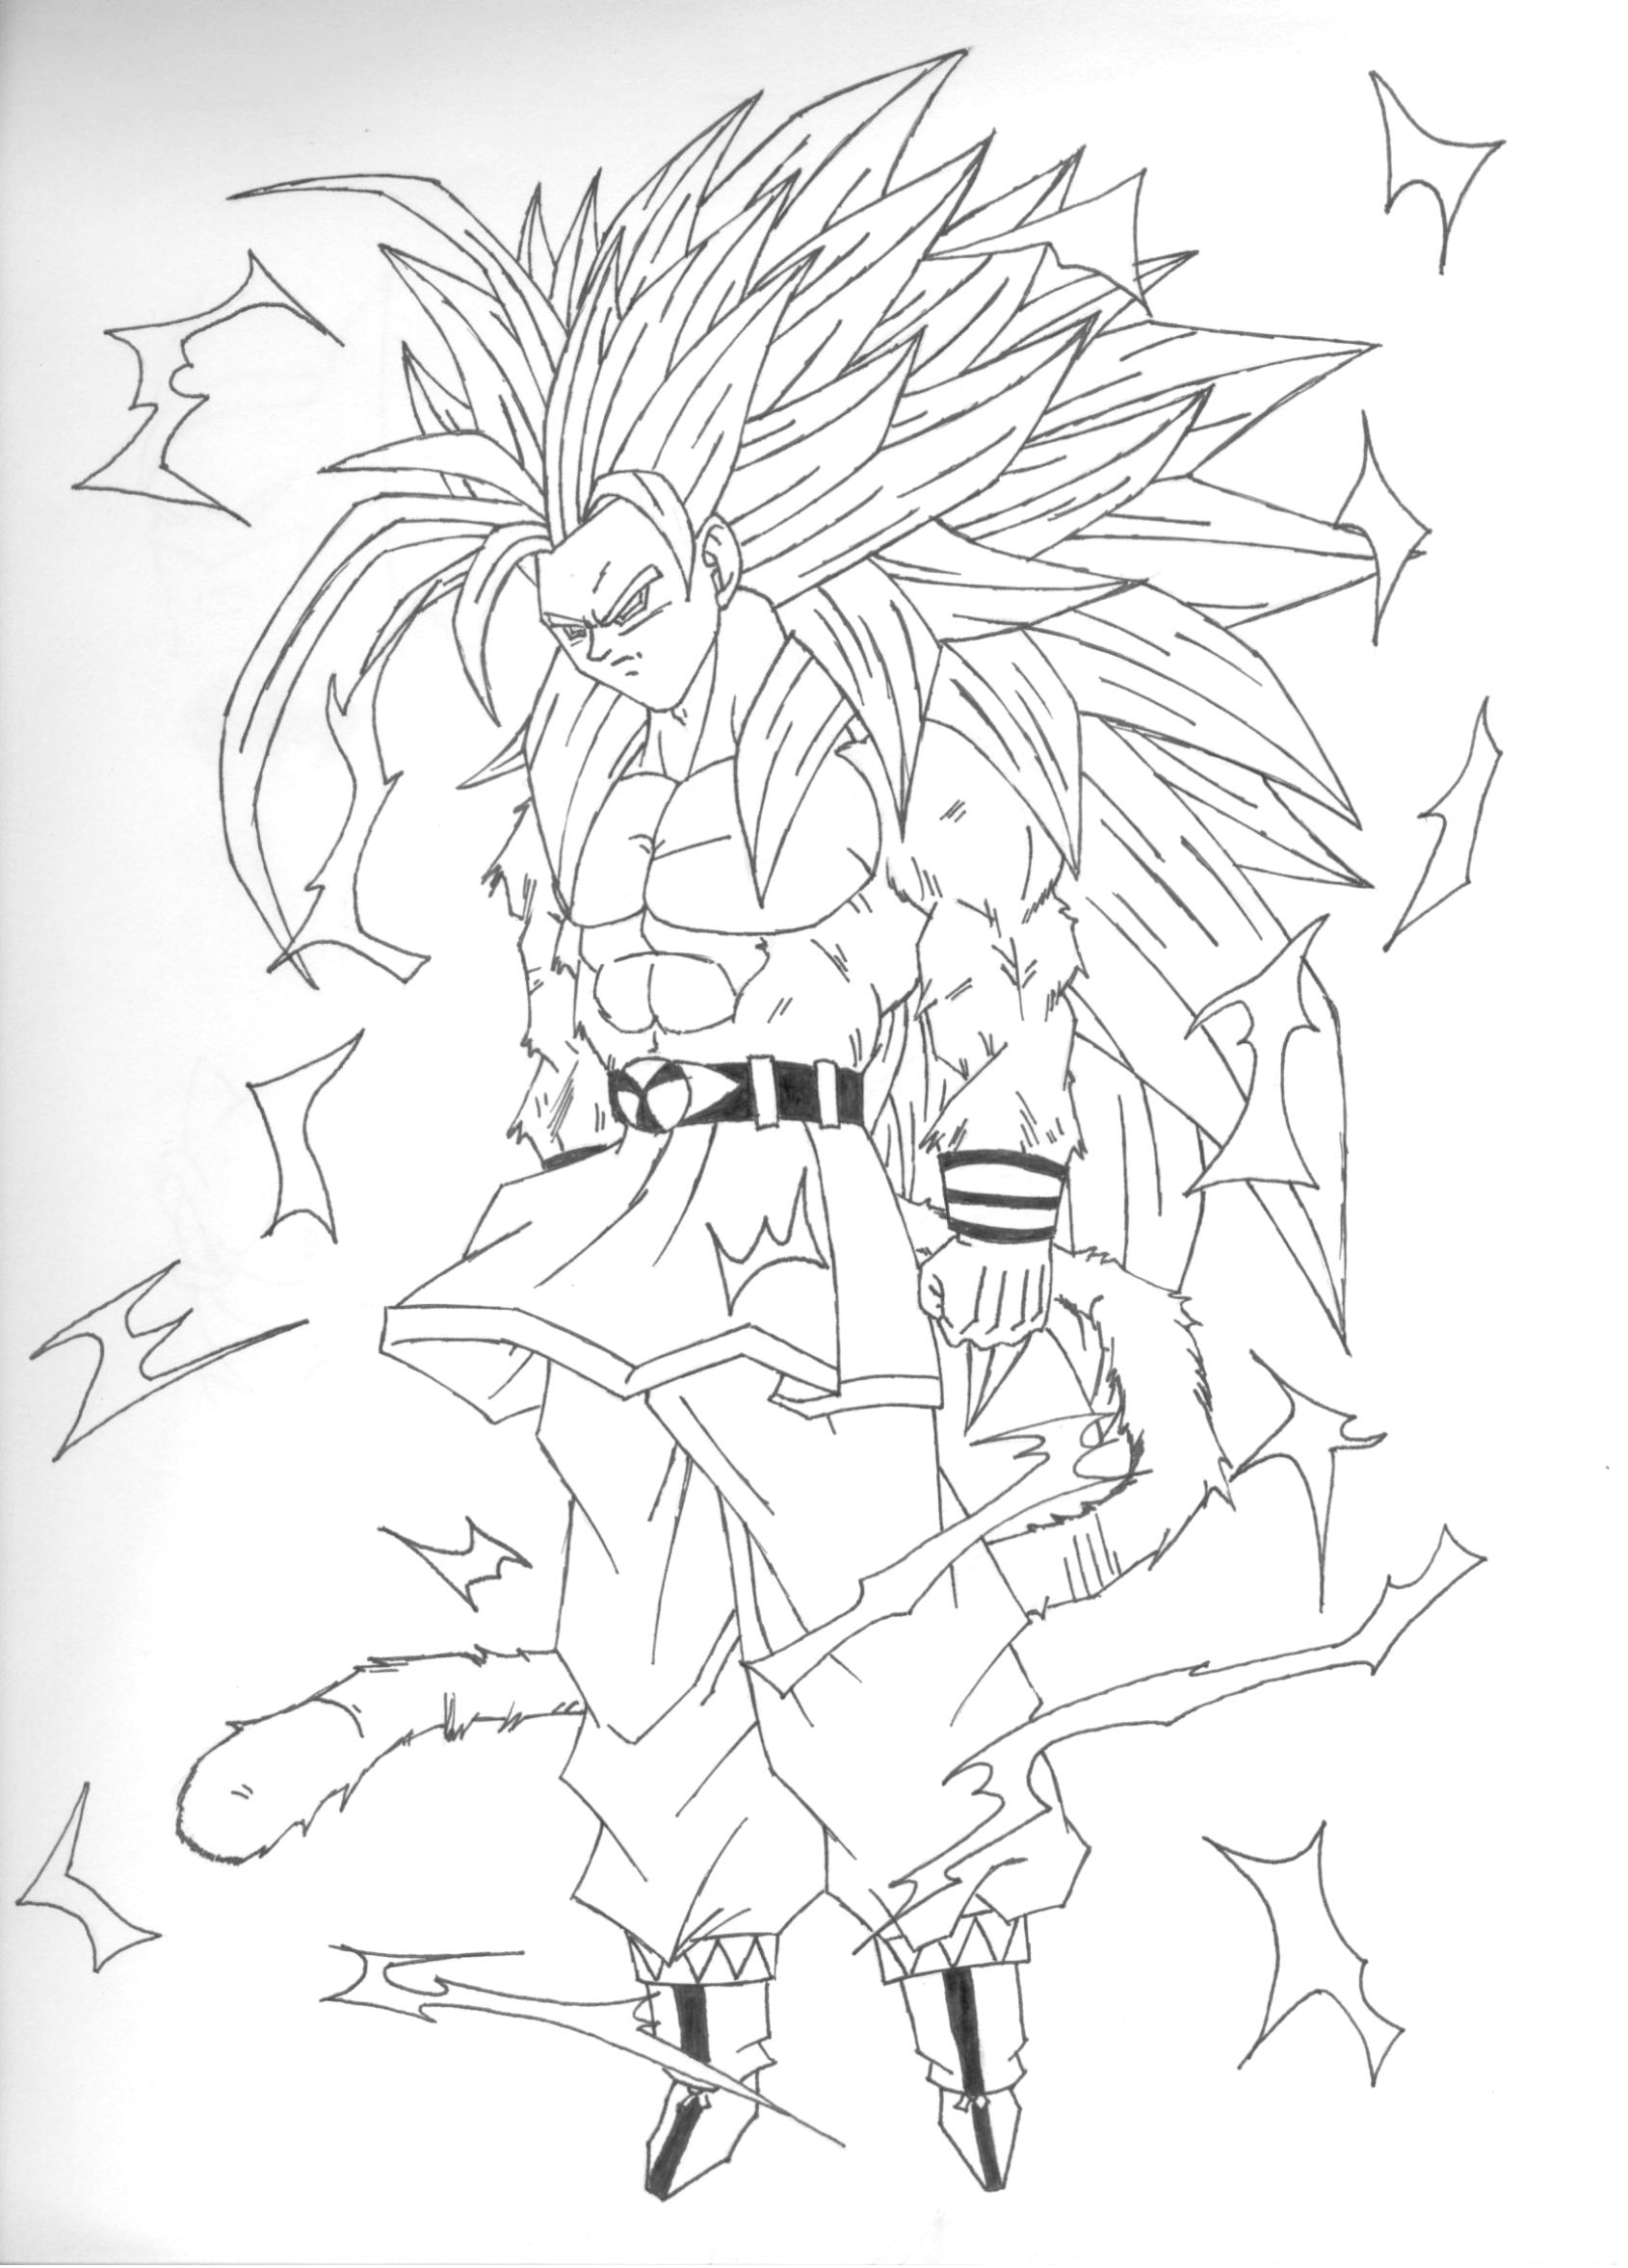 SSJ5 Goku by Joker216